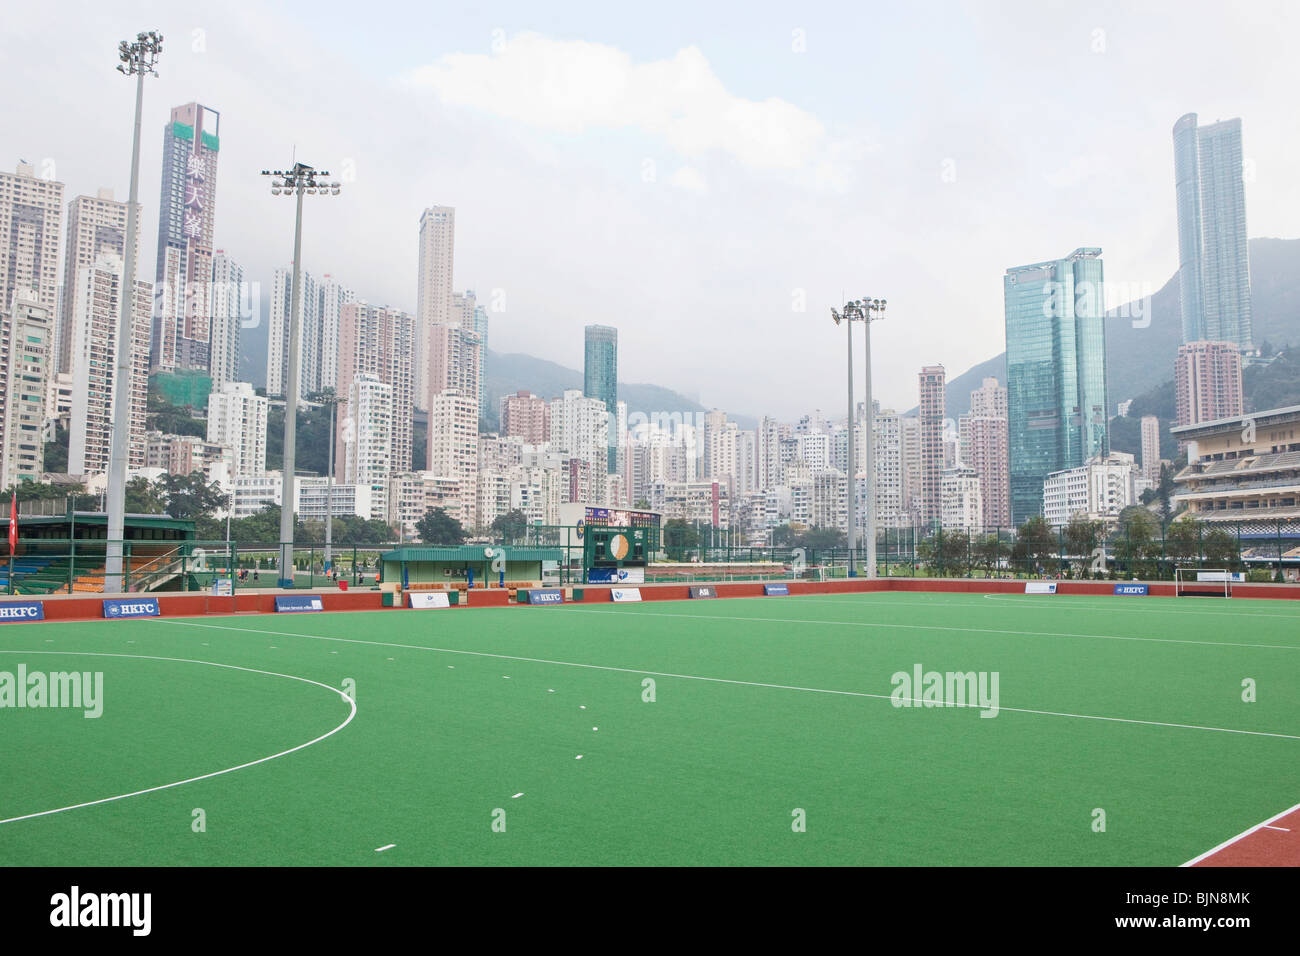 Les immeubles de grande hauteur de Happy Valley, derrière les terrains de jeu à l'intérieur de la Vallée Heureuse Racing Course, Hong Kong Banque D'Images